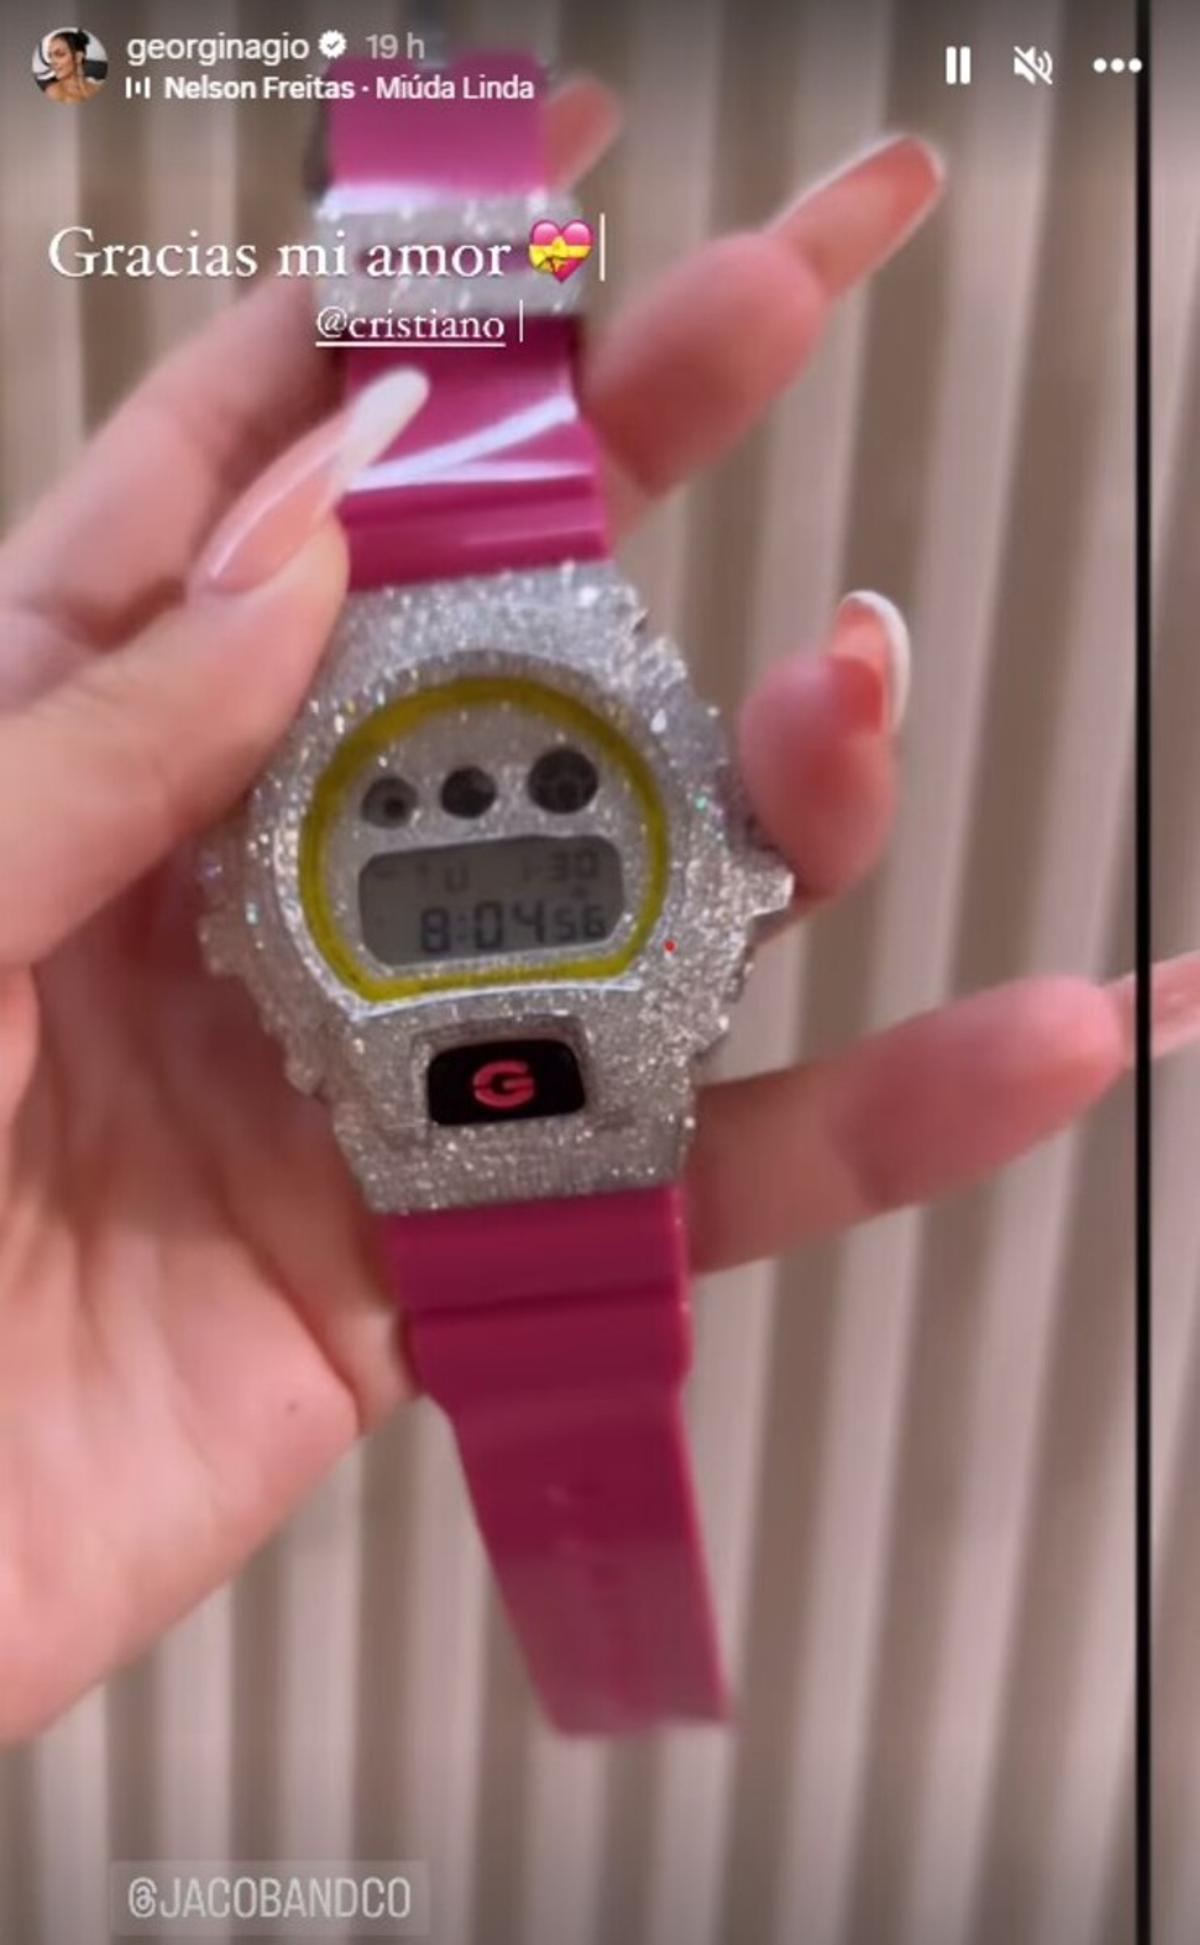 El reloj de 100.000 euros que Cristiano ha comprado a Georgina por su 30 cumpleaños.